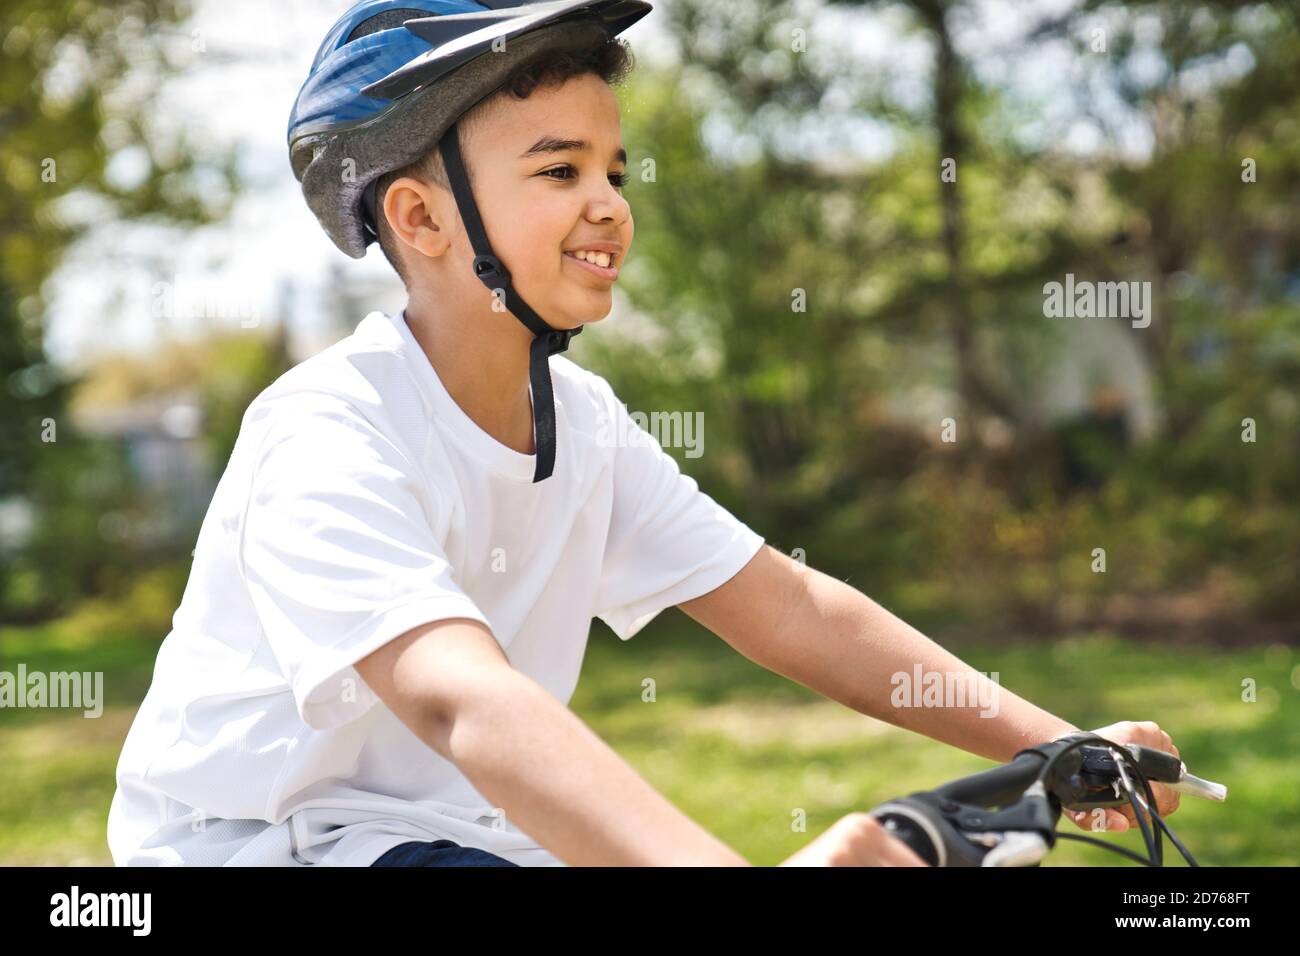 Boy Reiten Fahrrad trägt einen Helm draußen Stockfoto